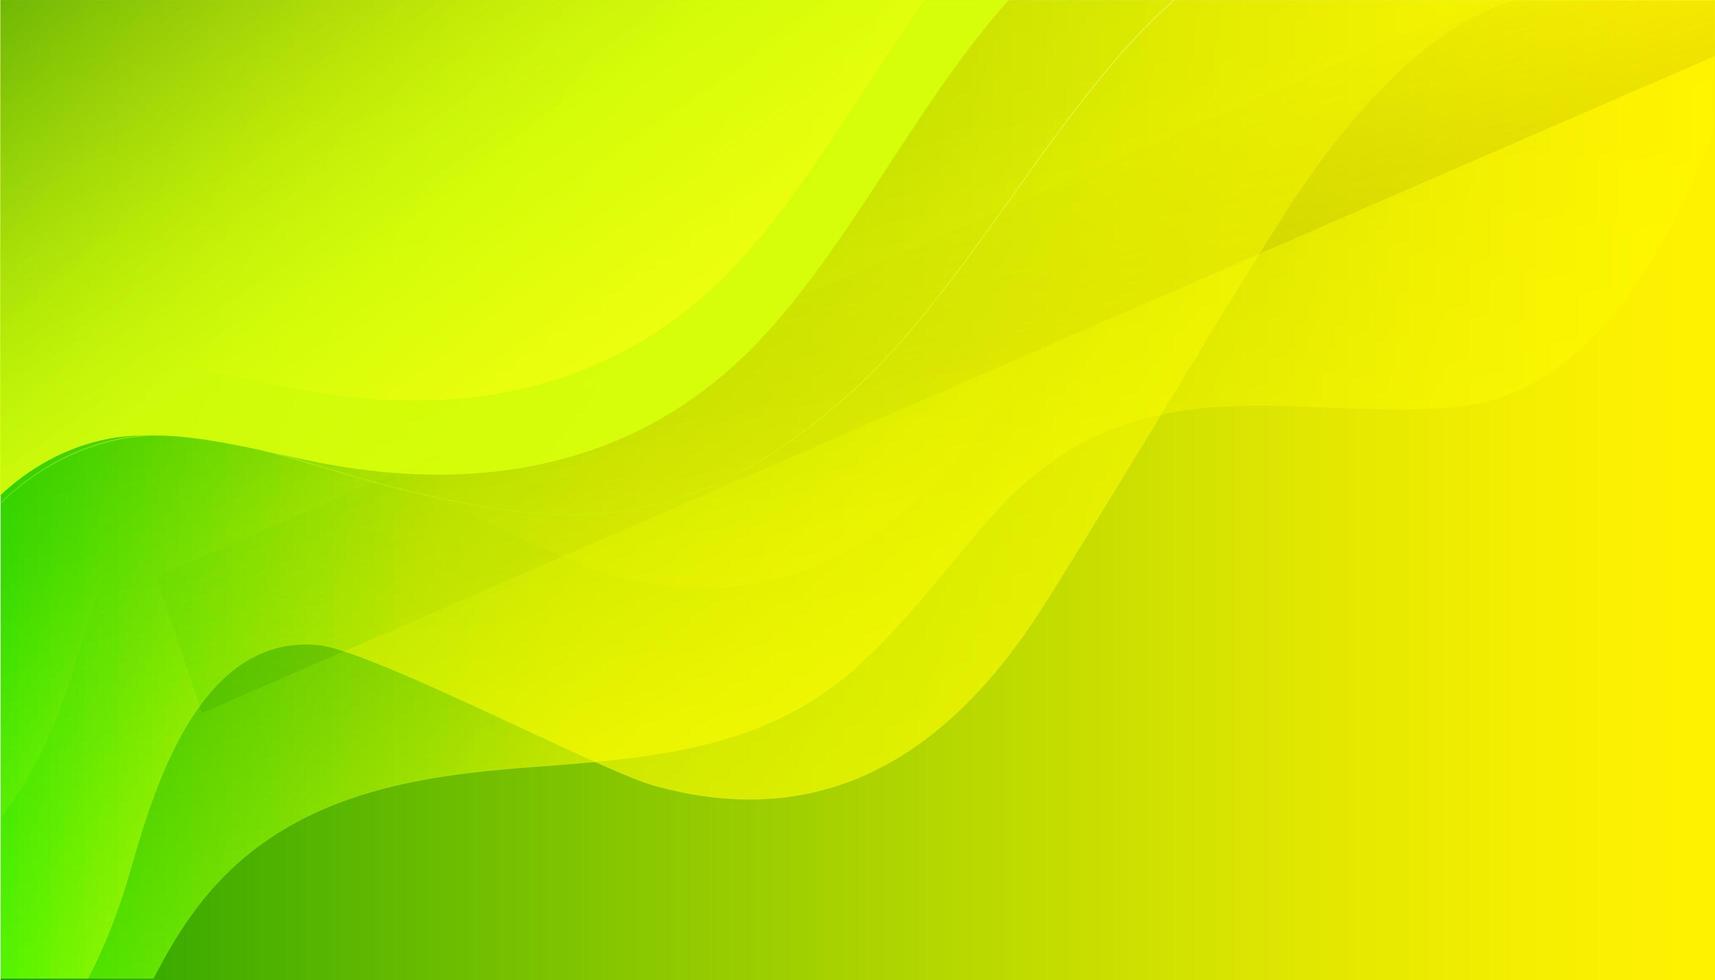 vert nature fond d'écran vert jaune arrière-plan simple vainqueur photo